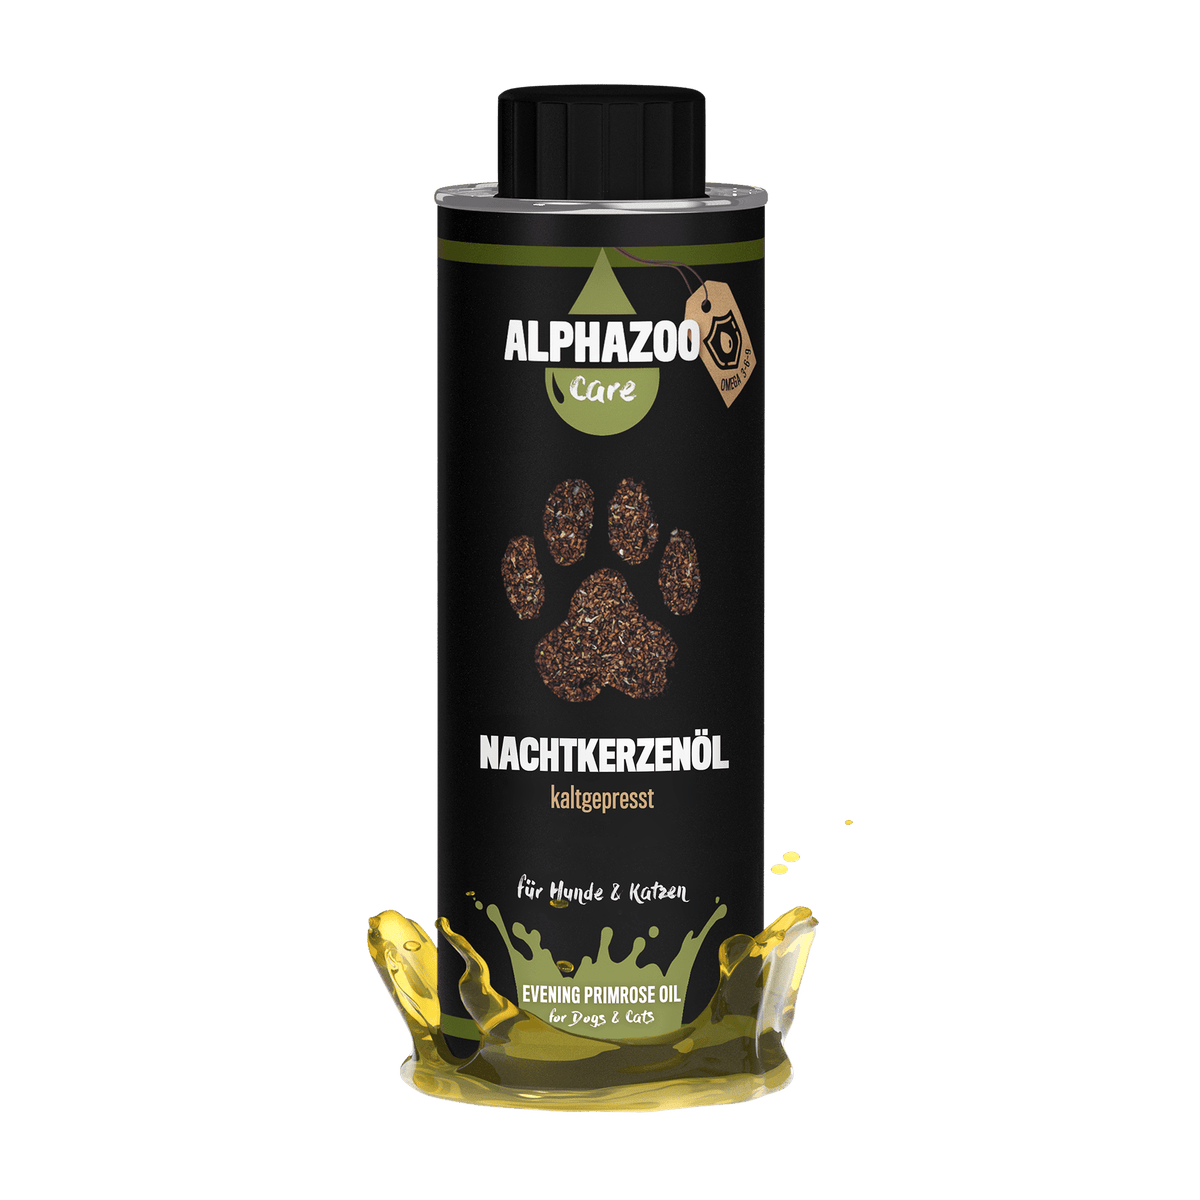 ALPHAZOO Premium Nachtkerzenöl 250ml für Hunde und Katzen I Vitale Haut und strahlendes Fell